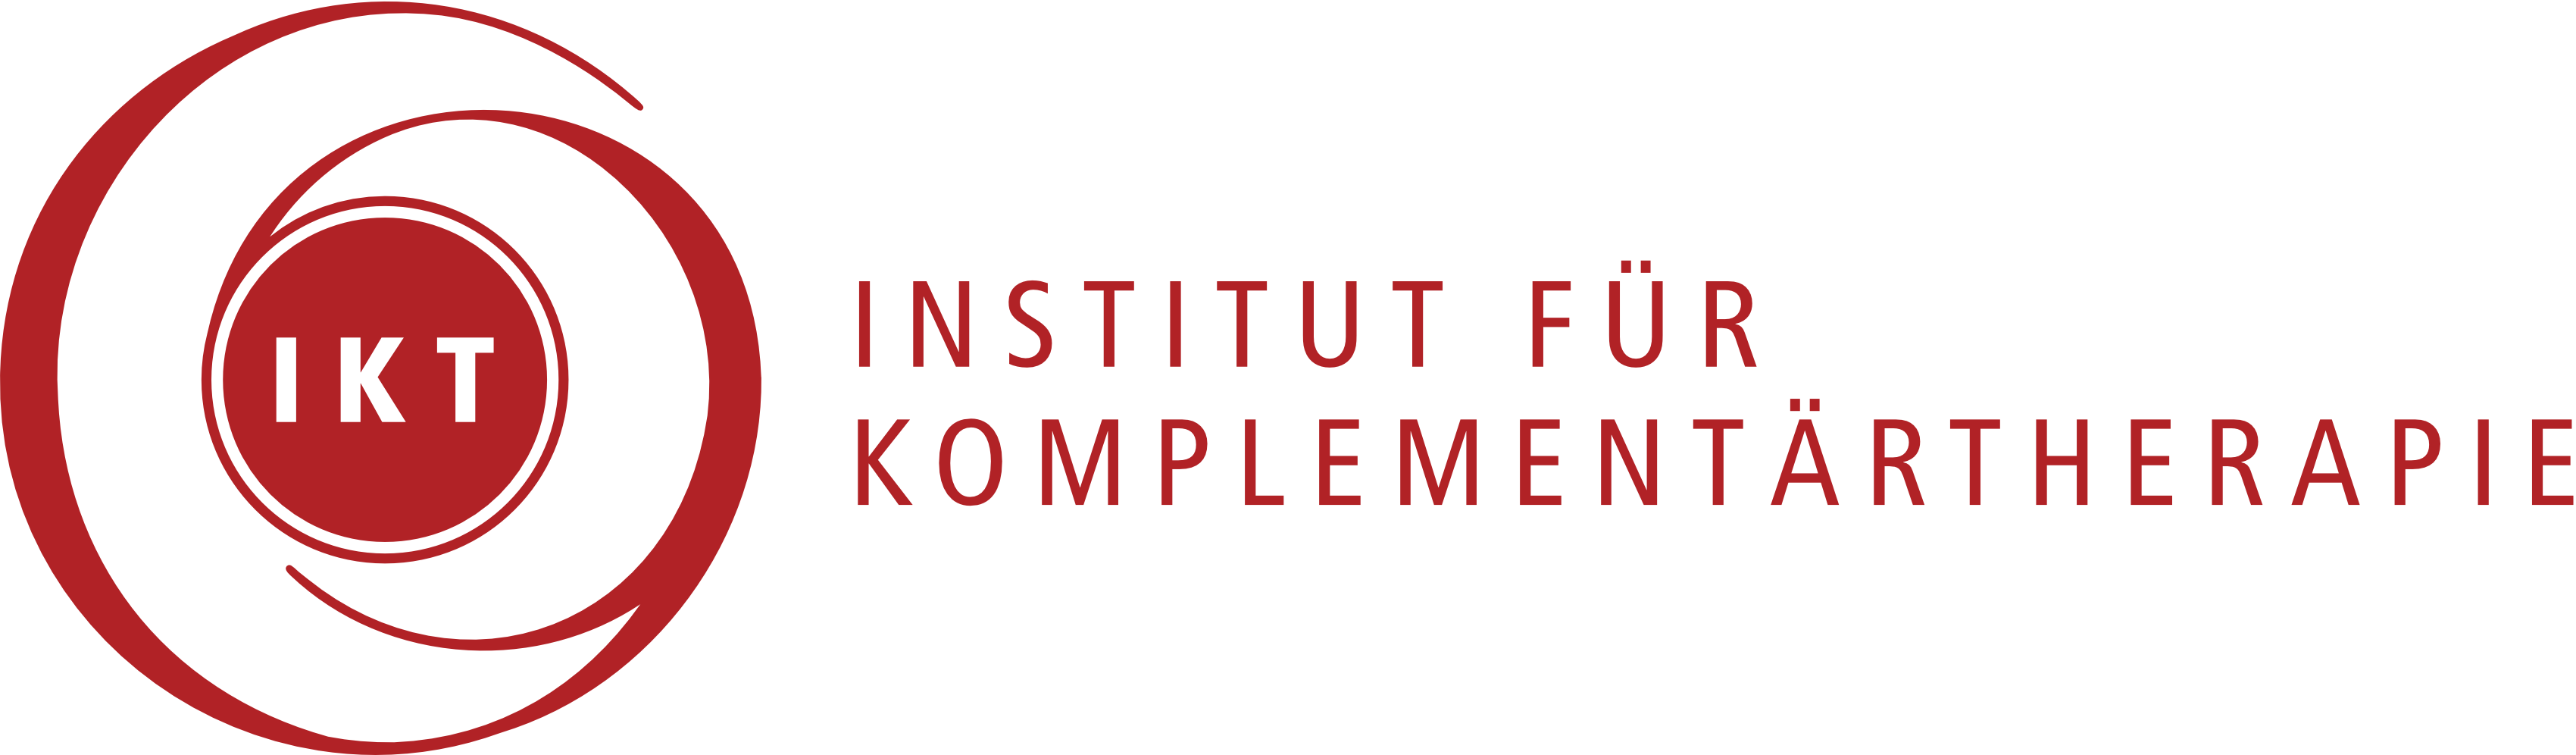 Institut für Komplementärtherapie IKT